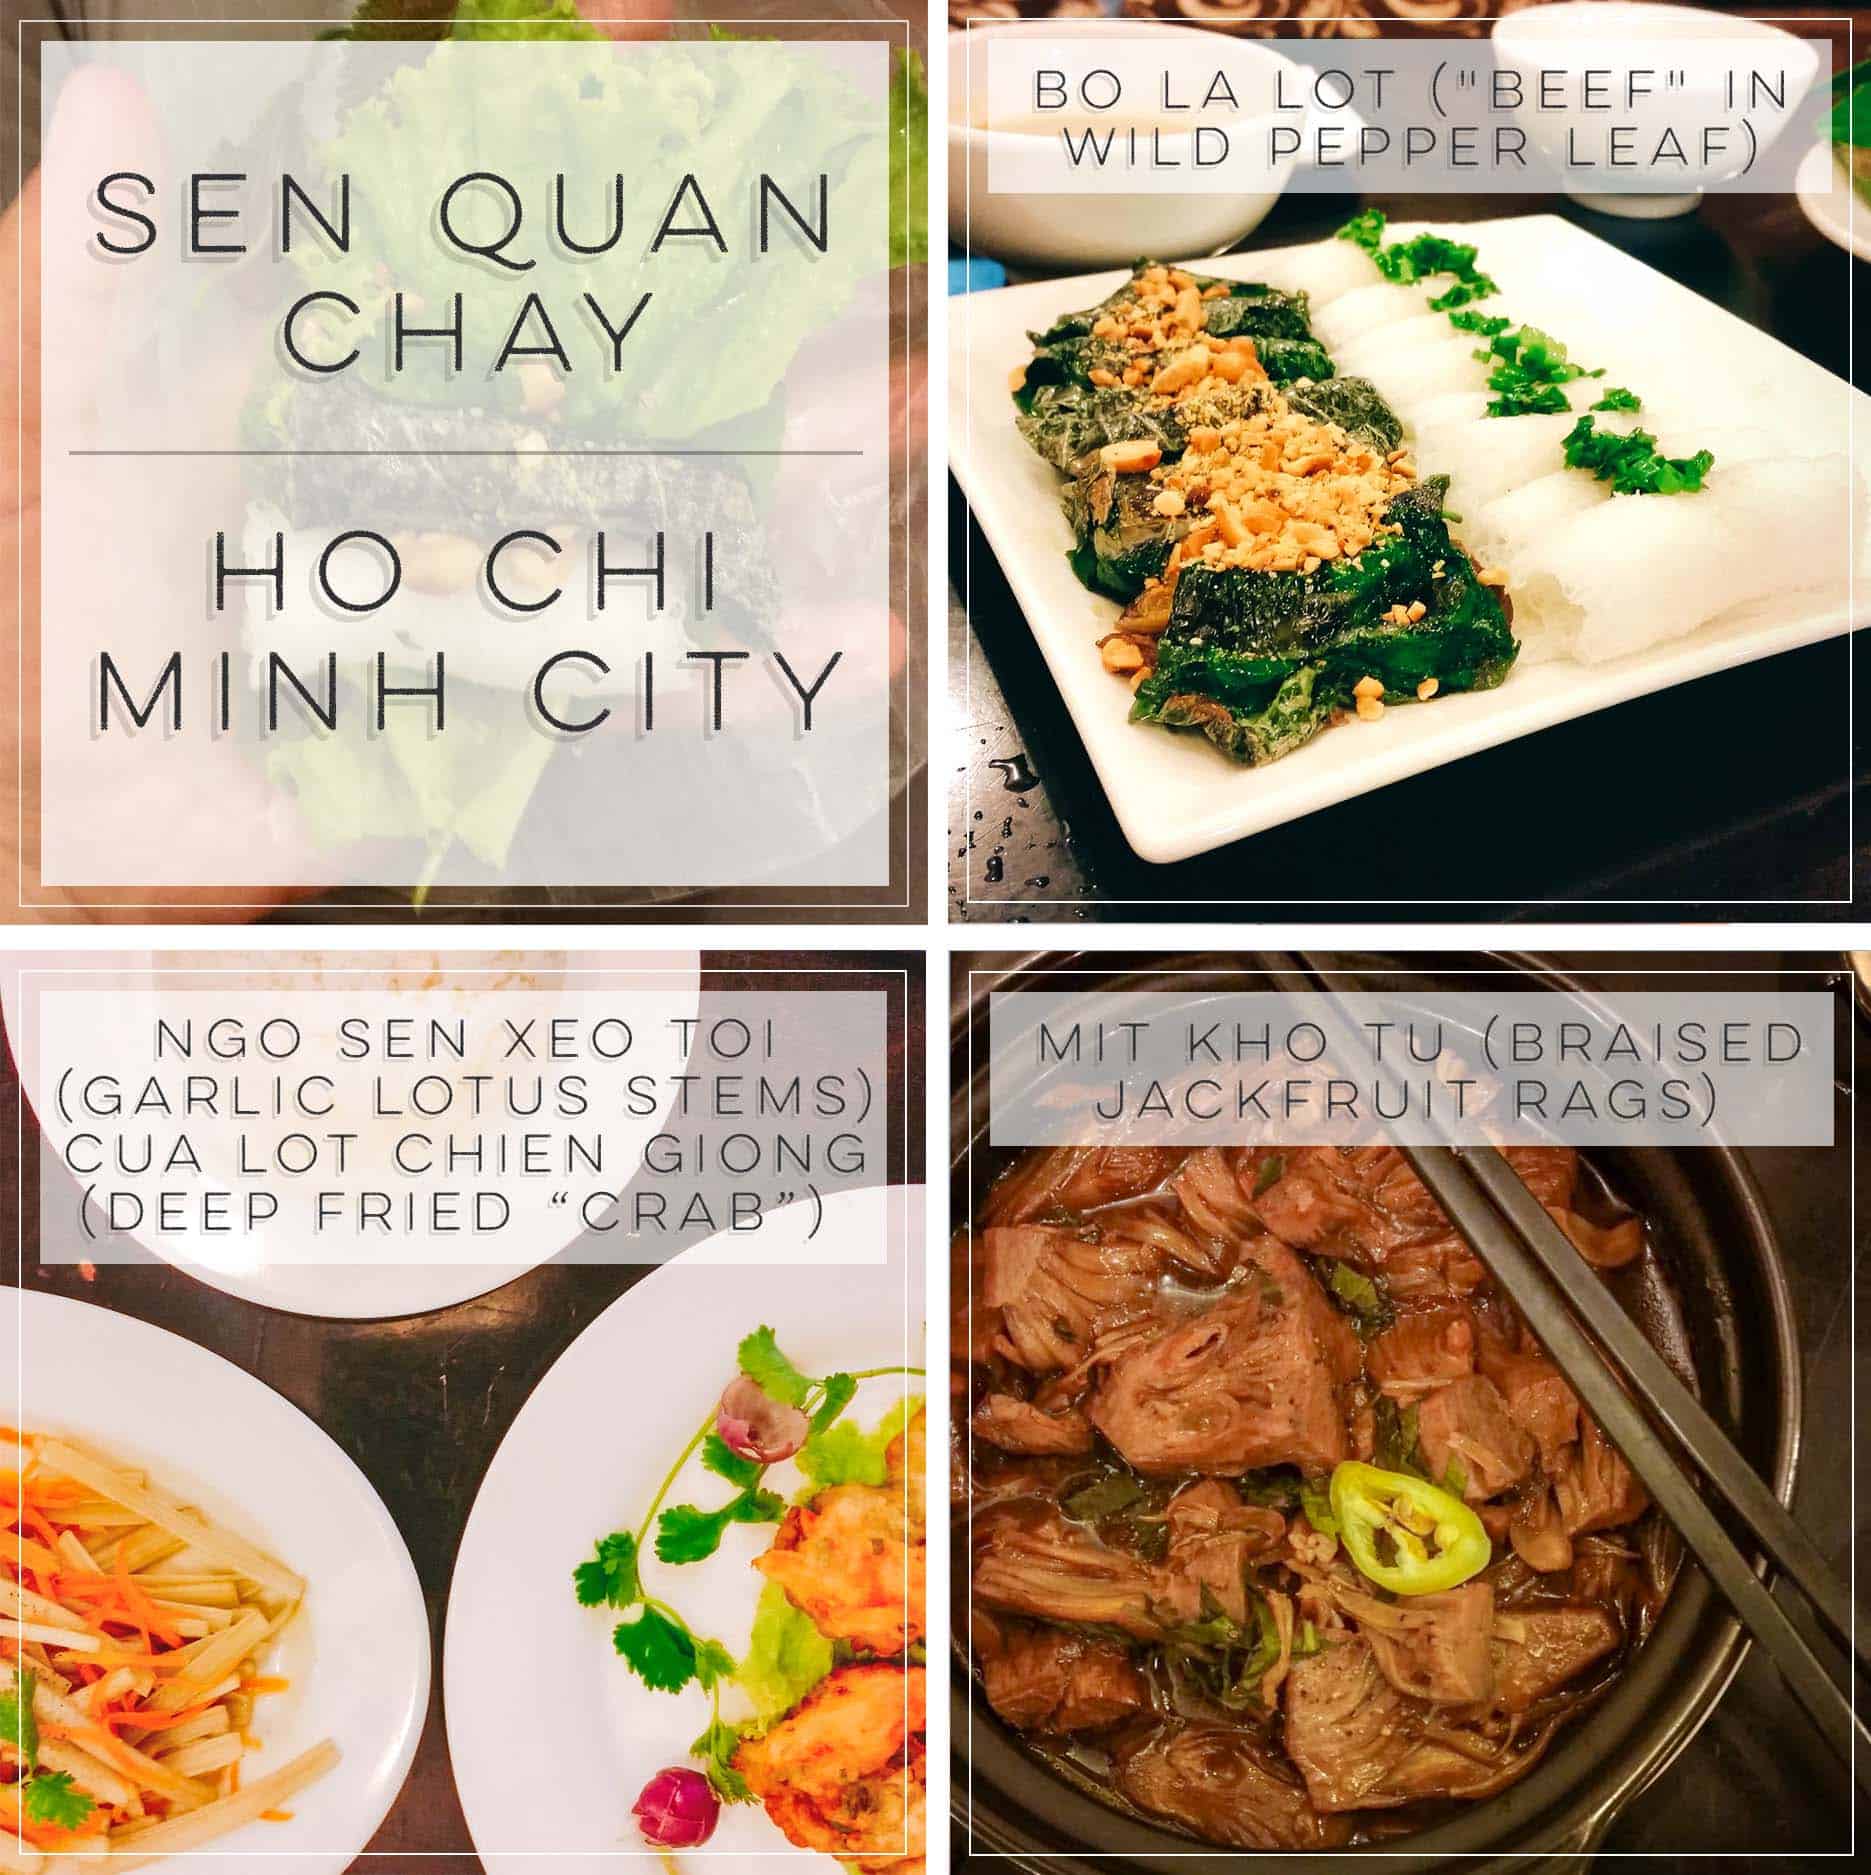 Vegan at Sen Quan Chay in Ho Chi Minh City